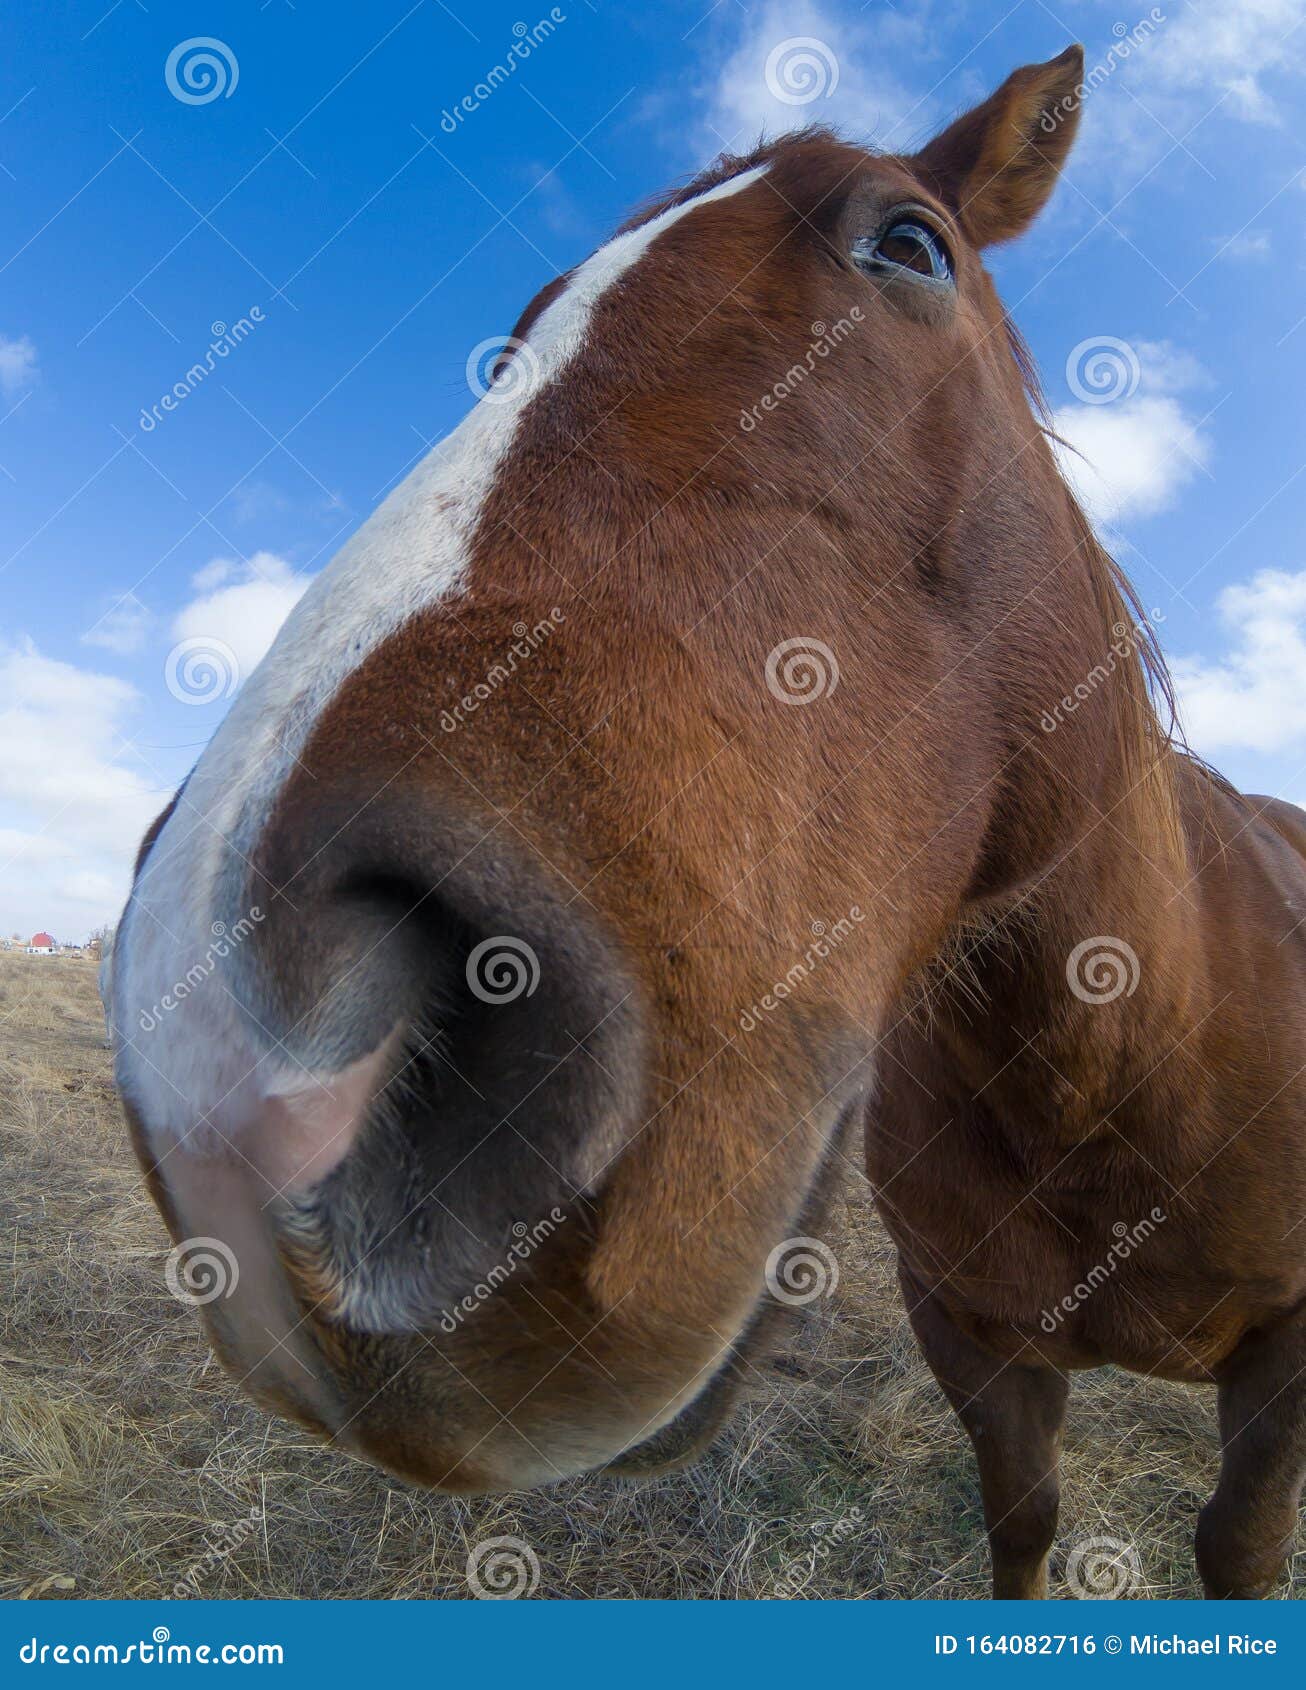 Cavalo rindo engraçado com olhos castanhos pretos e focinho